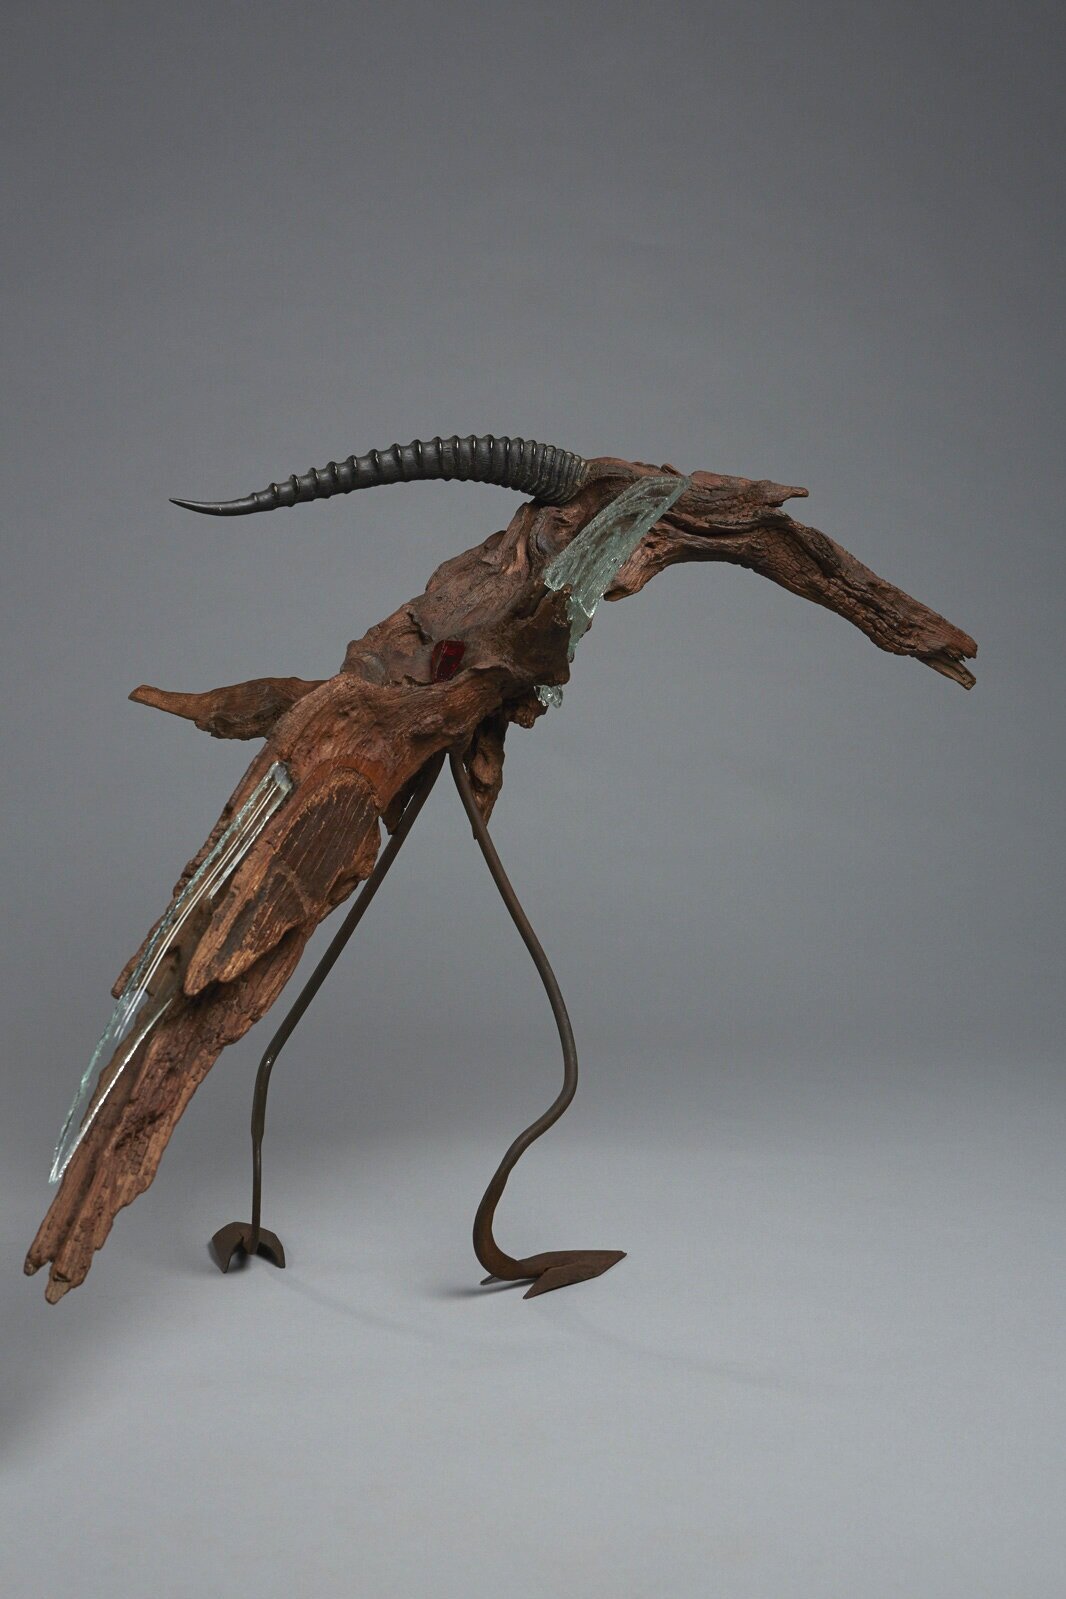 Oiseau sculpture animalière abstraite contemporaine en bois, métal et verre conçue par Bernard Froment